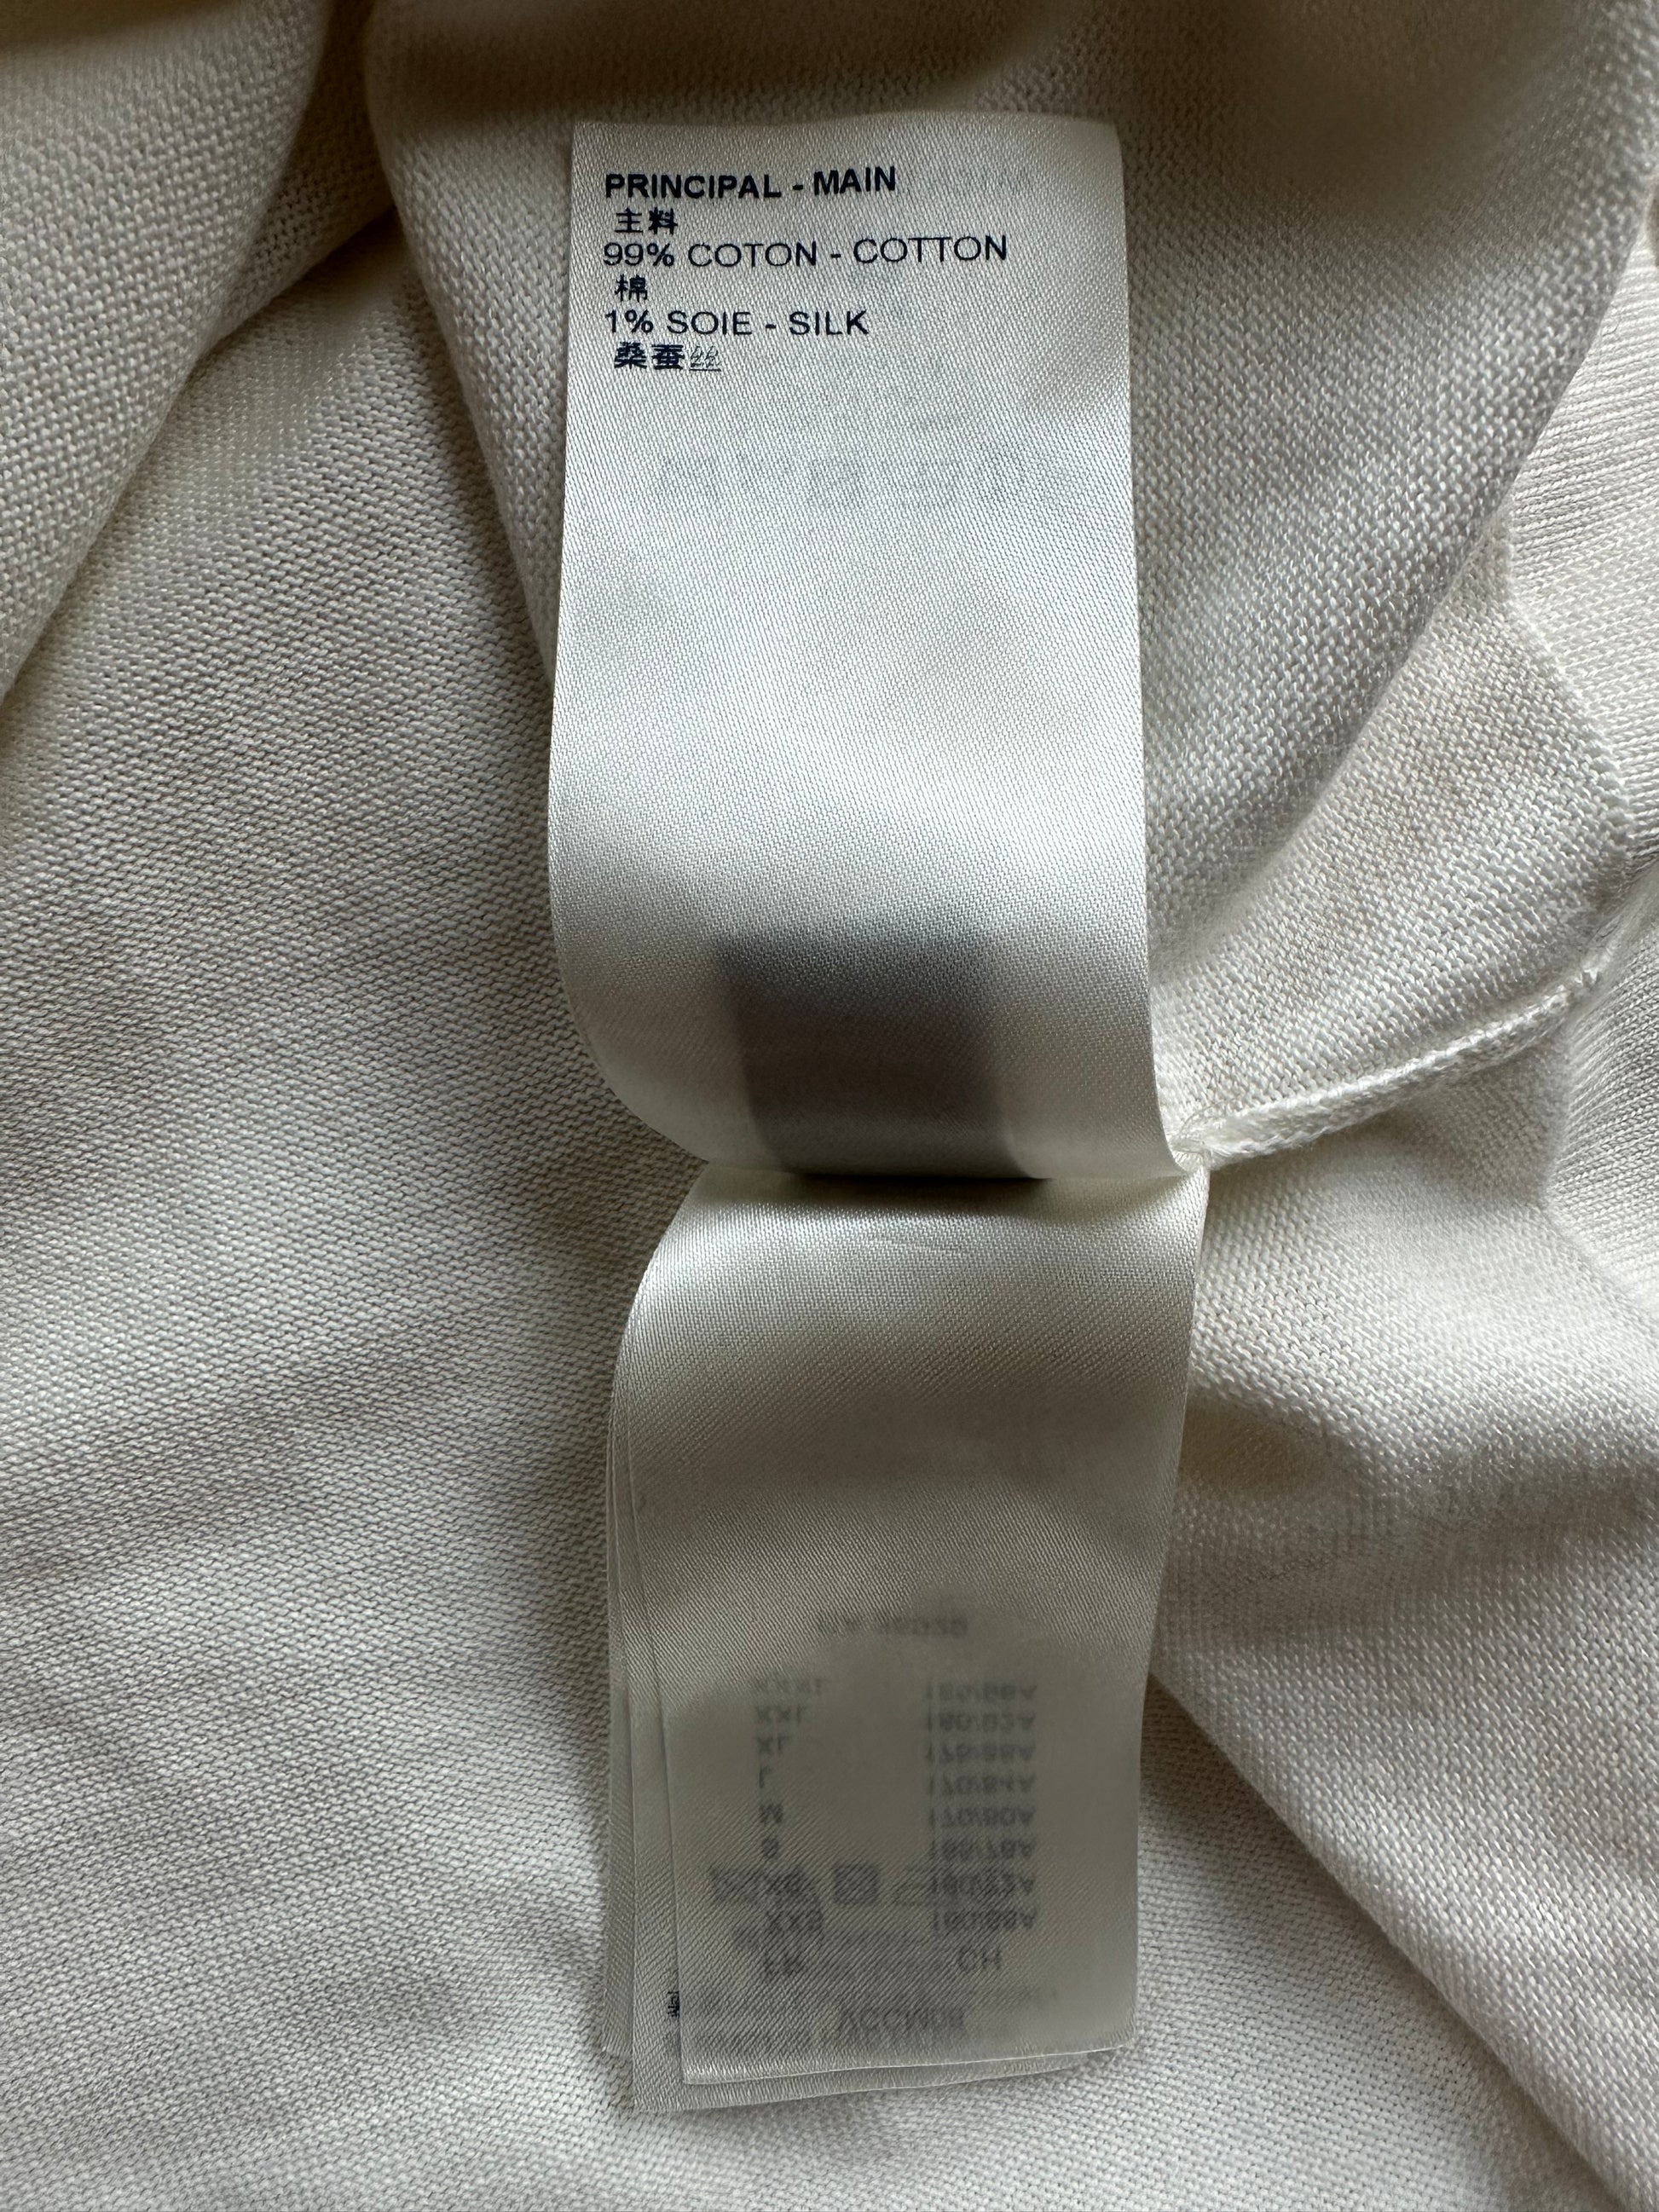 Louis Vuitton White Maison Intarsia T-Shirt